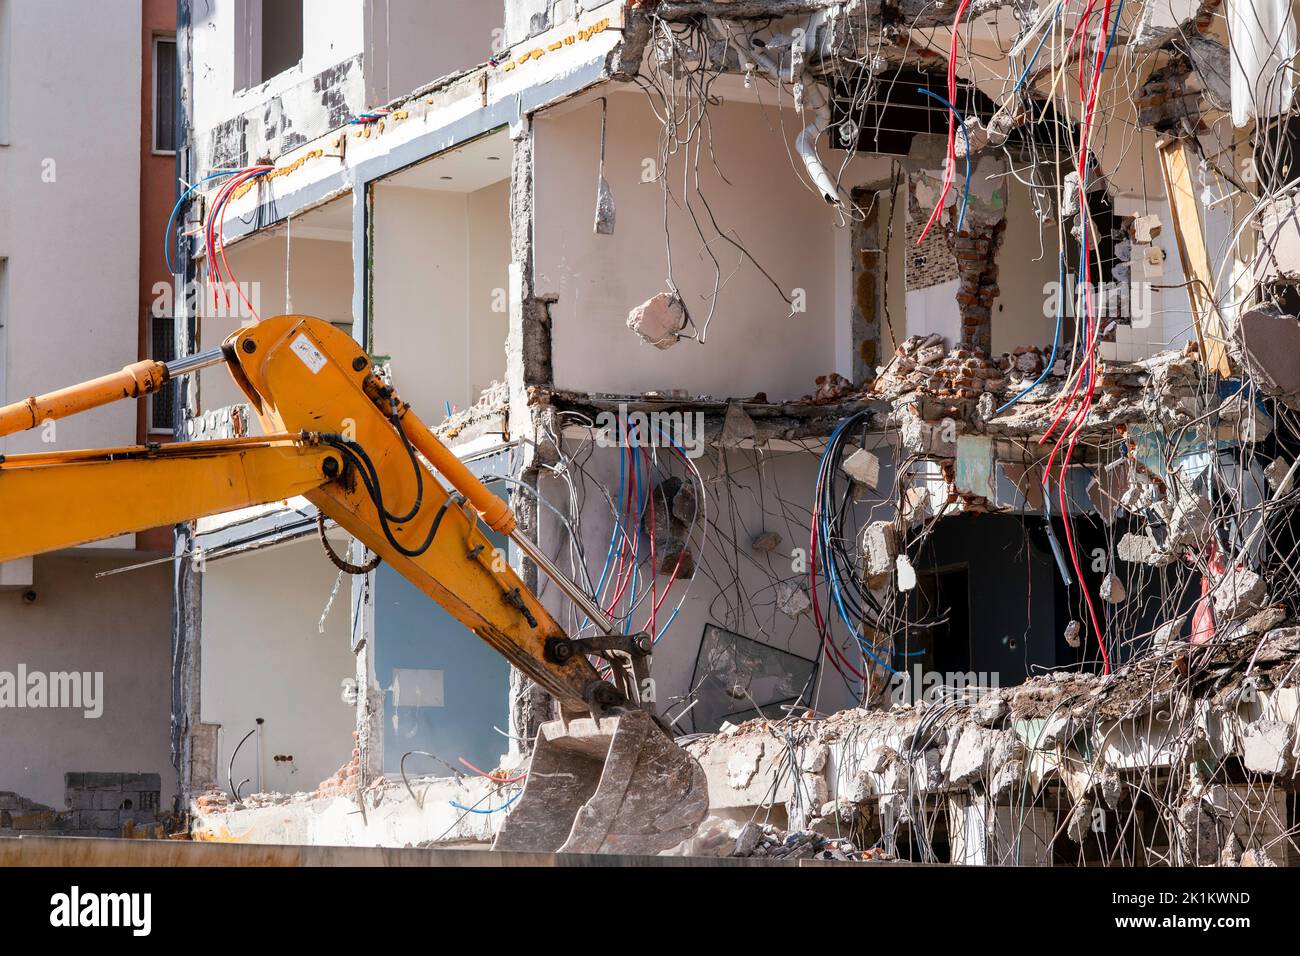 Una pesada máquina de trabajo industrial, digger está destruyendo un viejo edificio abandonado. Fotografía de alta calidad Foto de stock